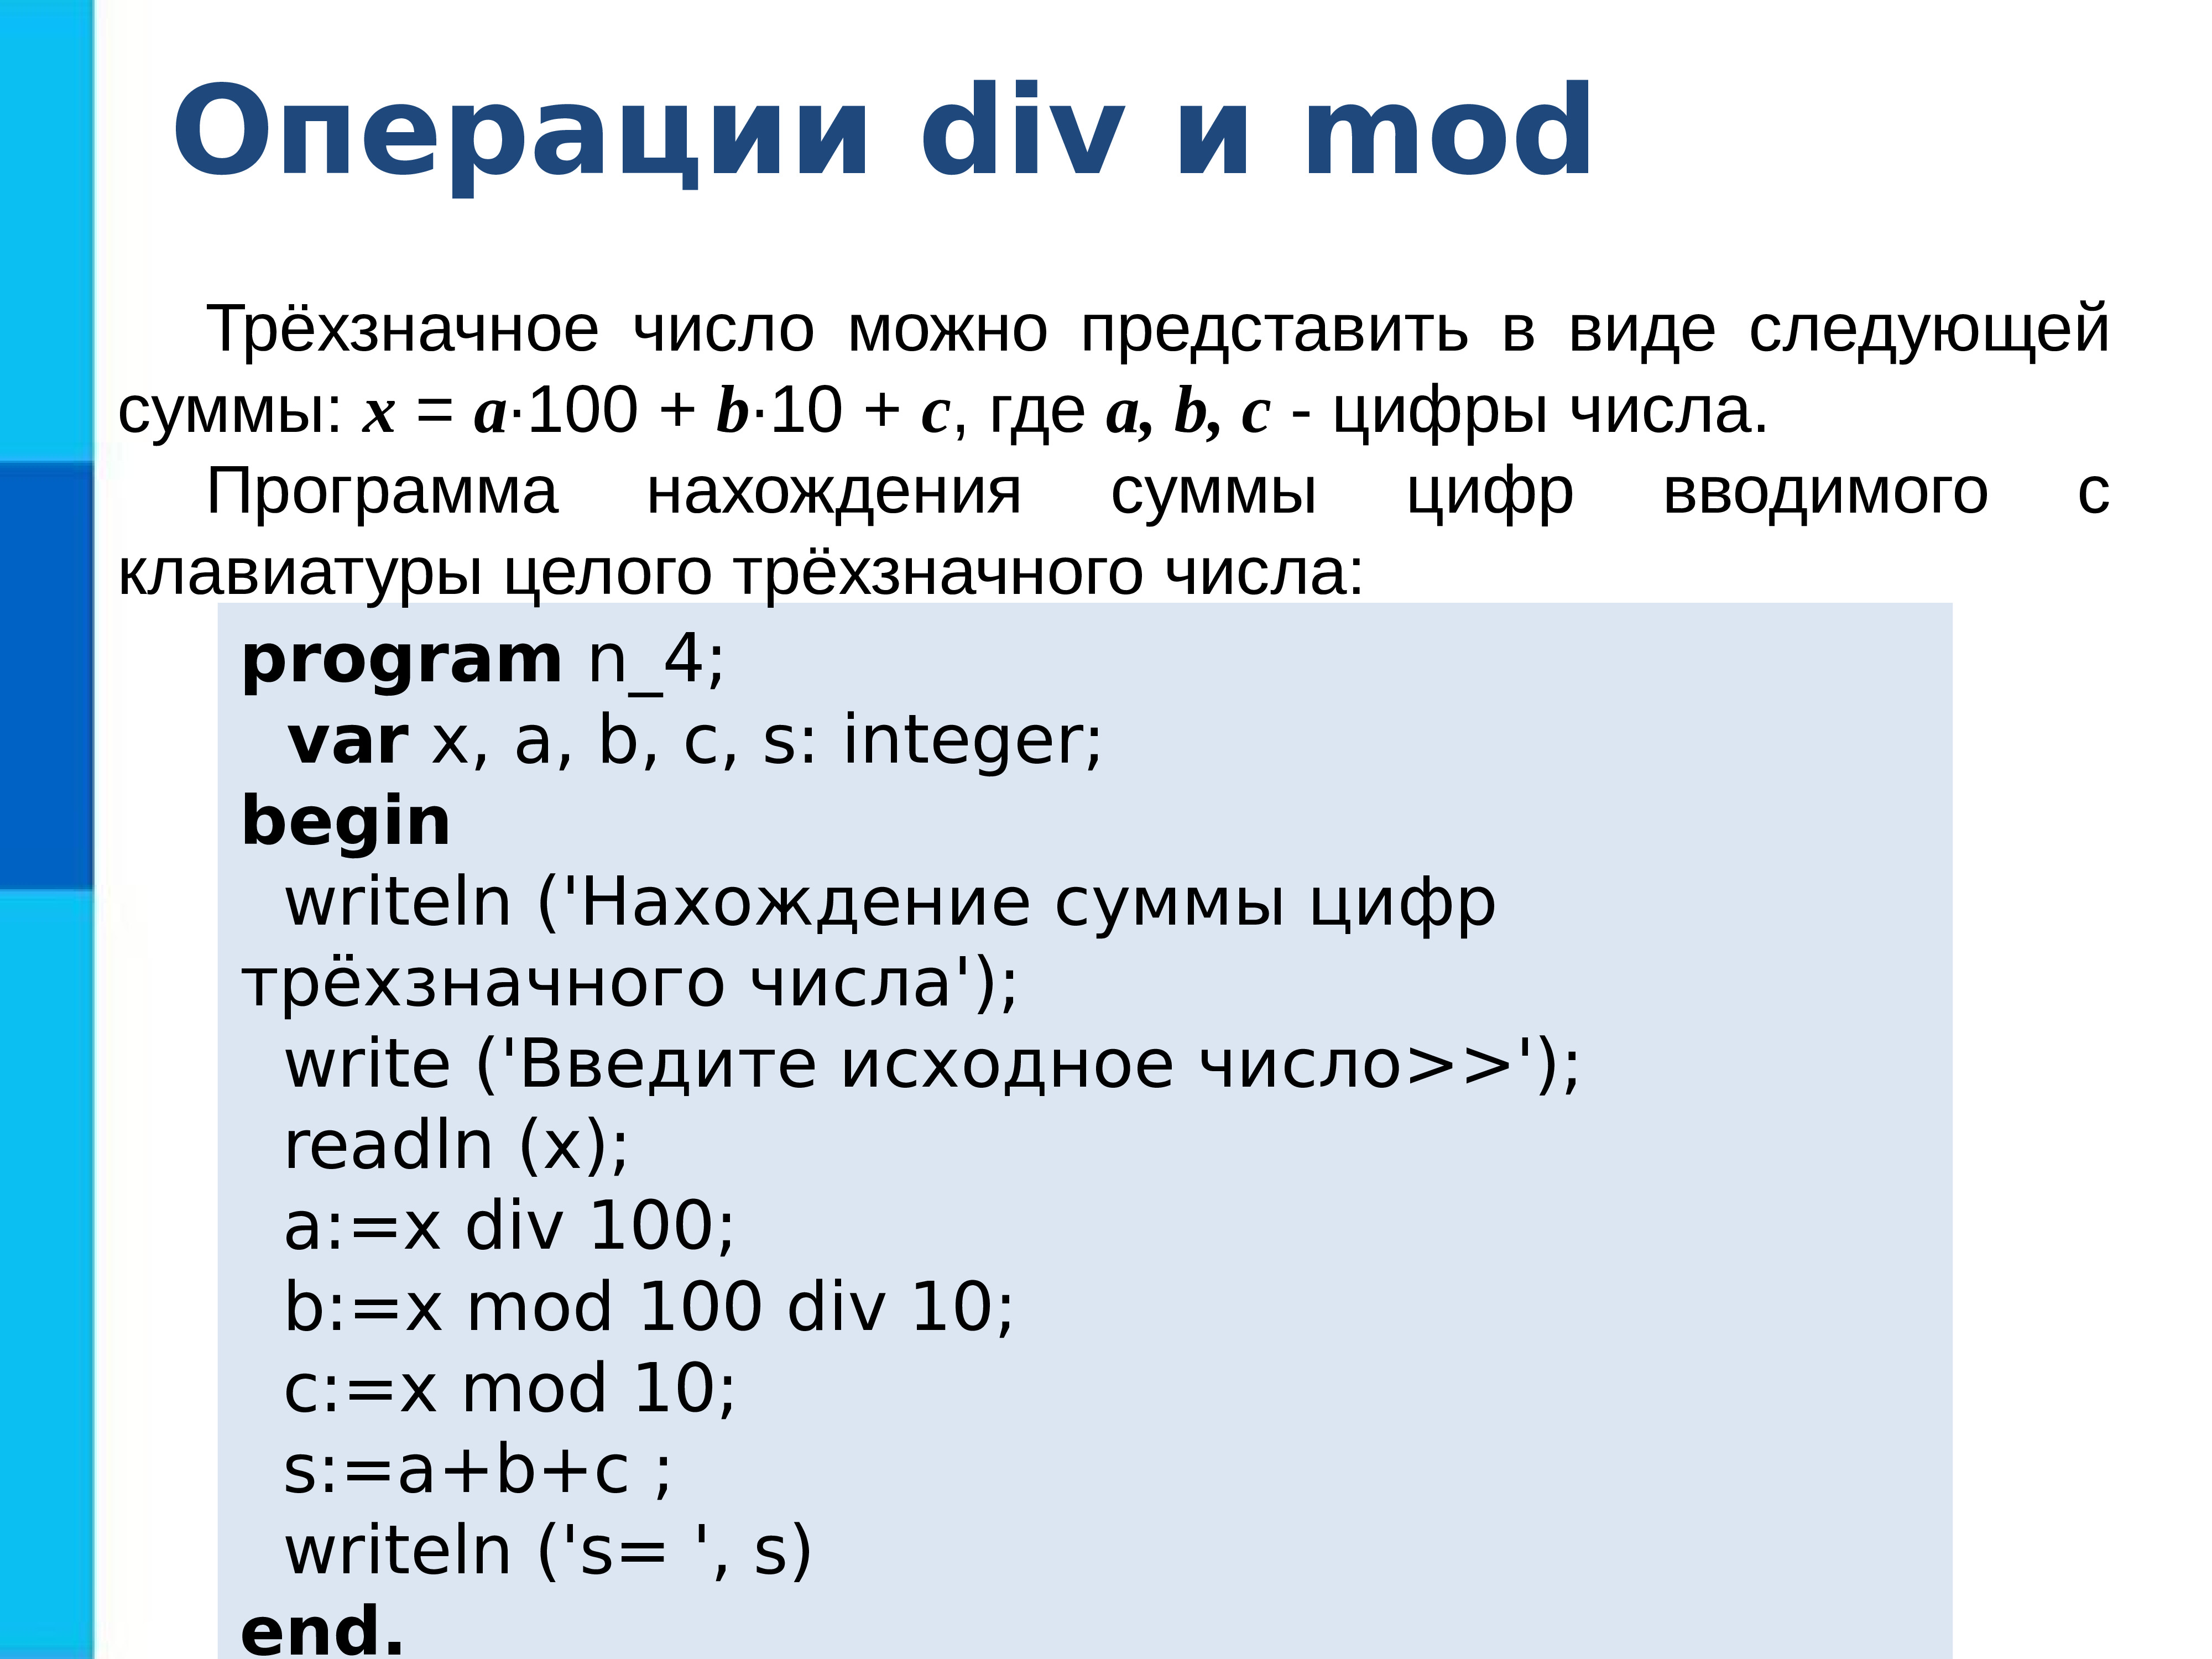 M div. Программирование линейных алгоритмов на языке Паскаль 8 класс. Операция div. Операция div и Mod. Mod и div в Паскале.